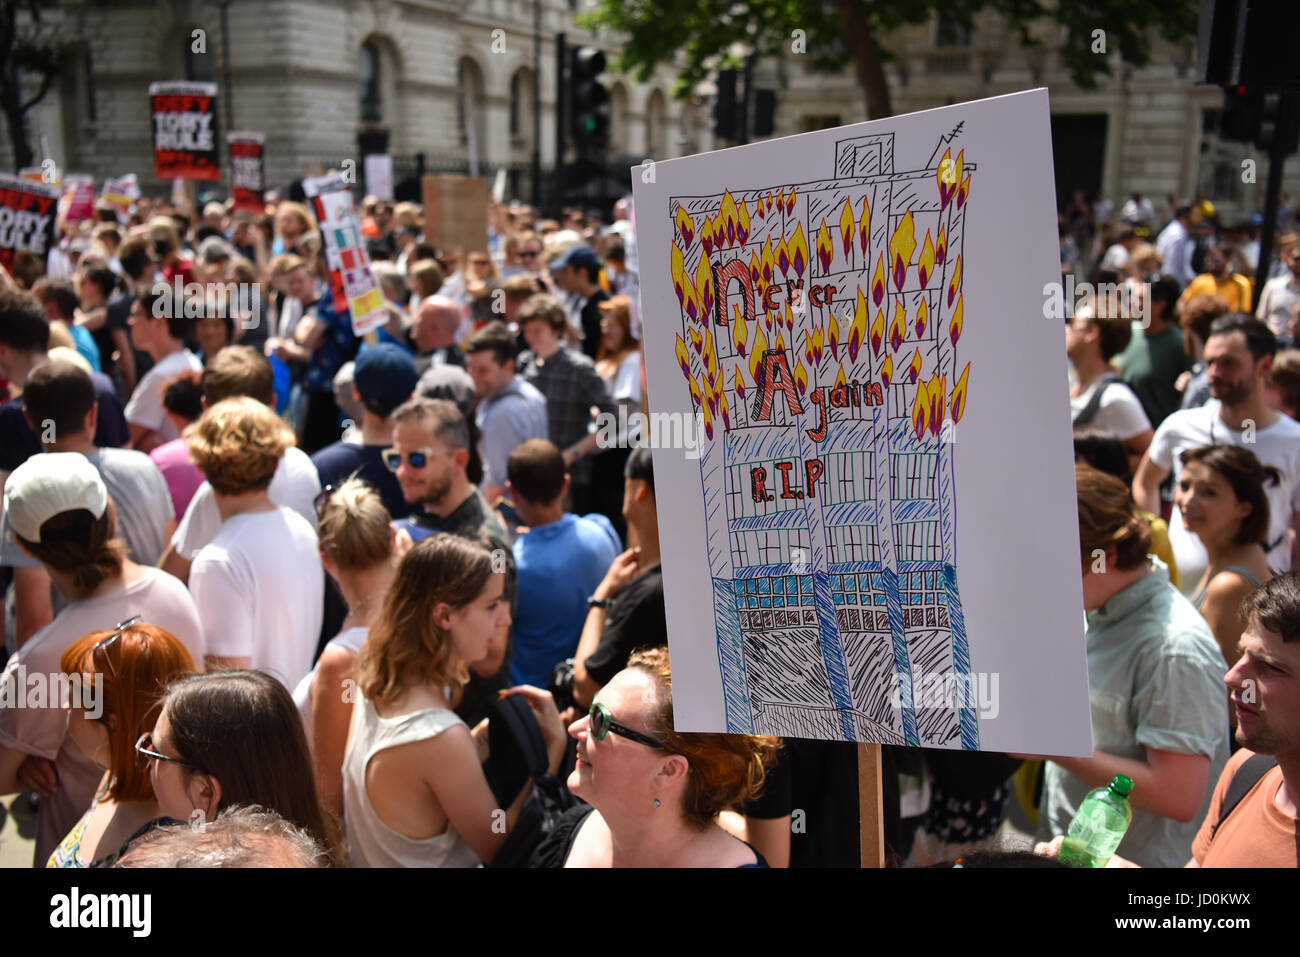 Londra, Regno Unito. Xvii Jun, 2017. Migliaia di manifestanti radunati fuori a Downing Street per contrastare il conservatore e parlamentare DUP "fornitura e fiducia" trattativa. Credito: Giacobbe Sacks-Jones/Alamy Live News. Foto Stock